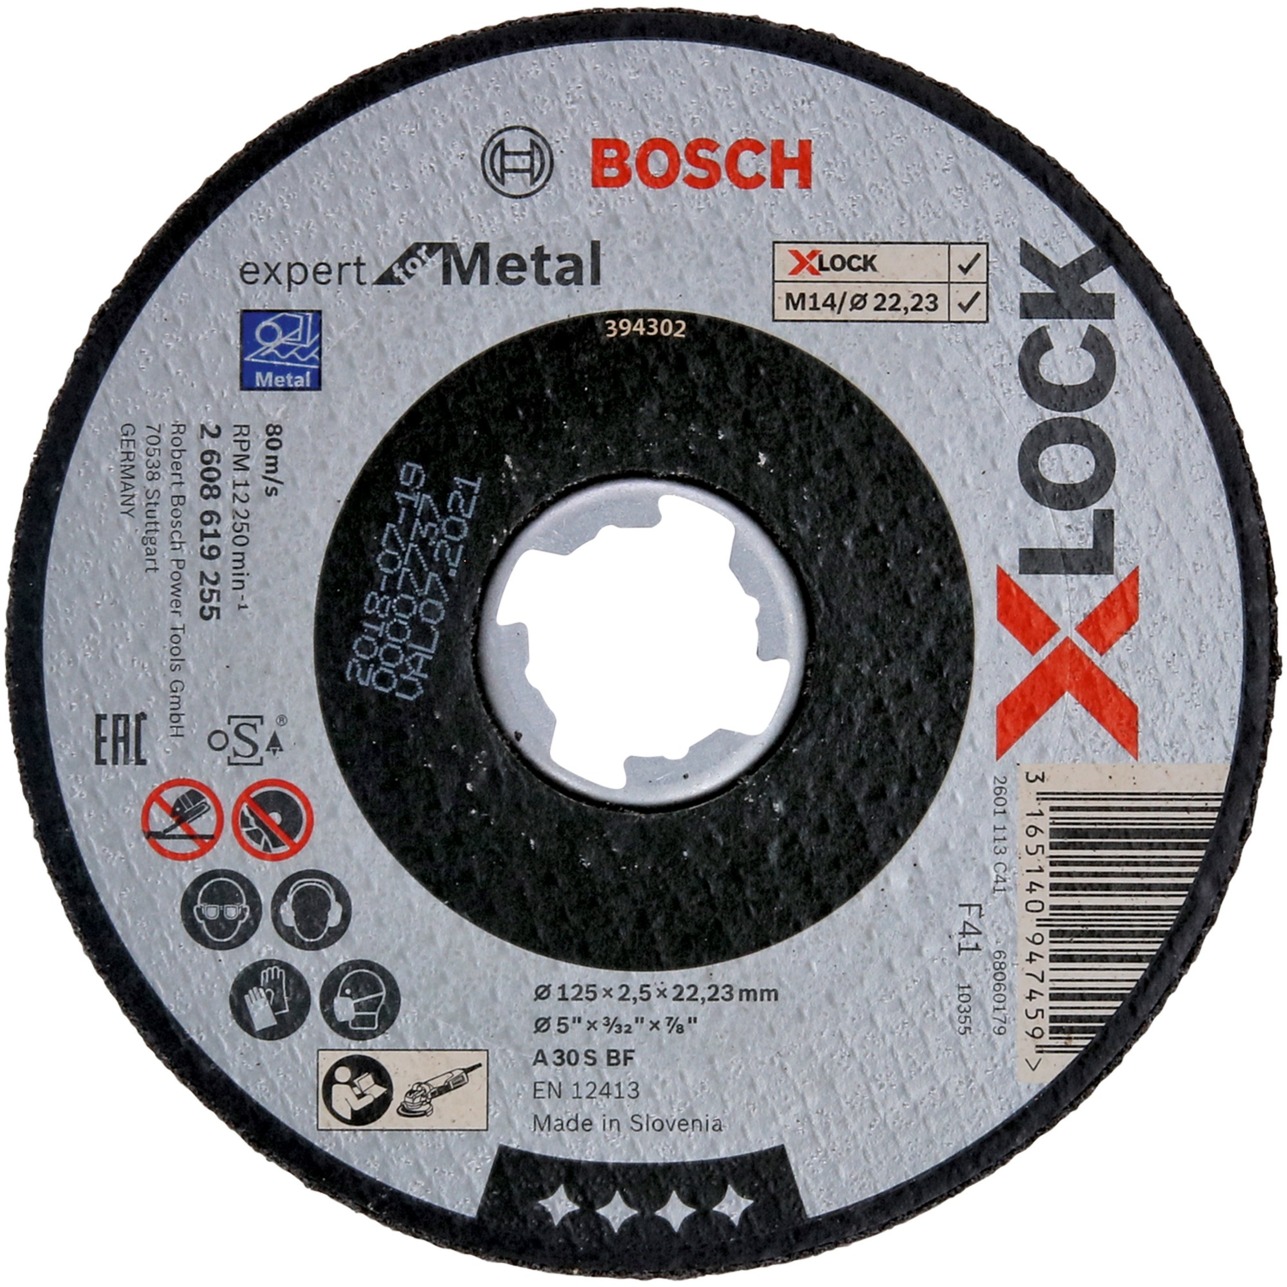 X-LOCK Trennscheibe Expert for Metal, Ø 125mm von Bosch